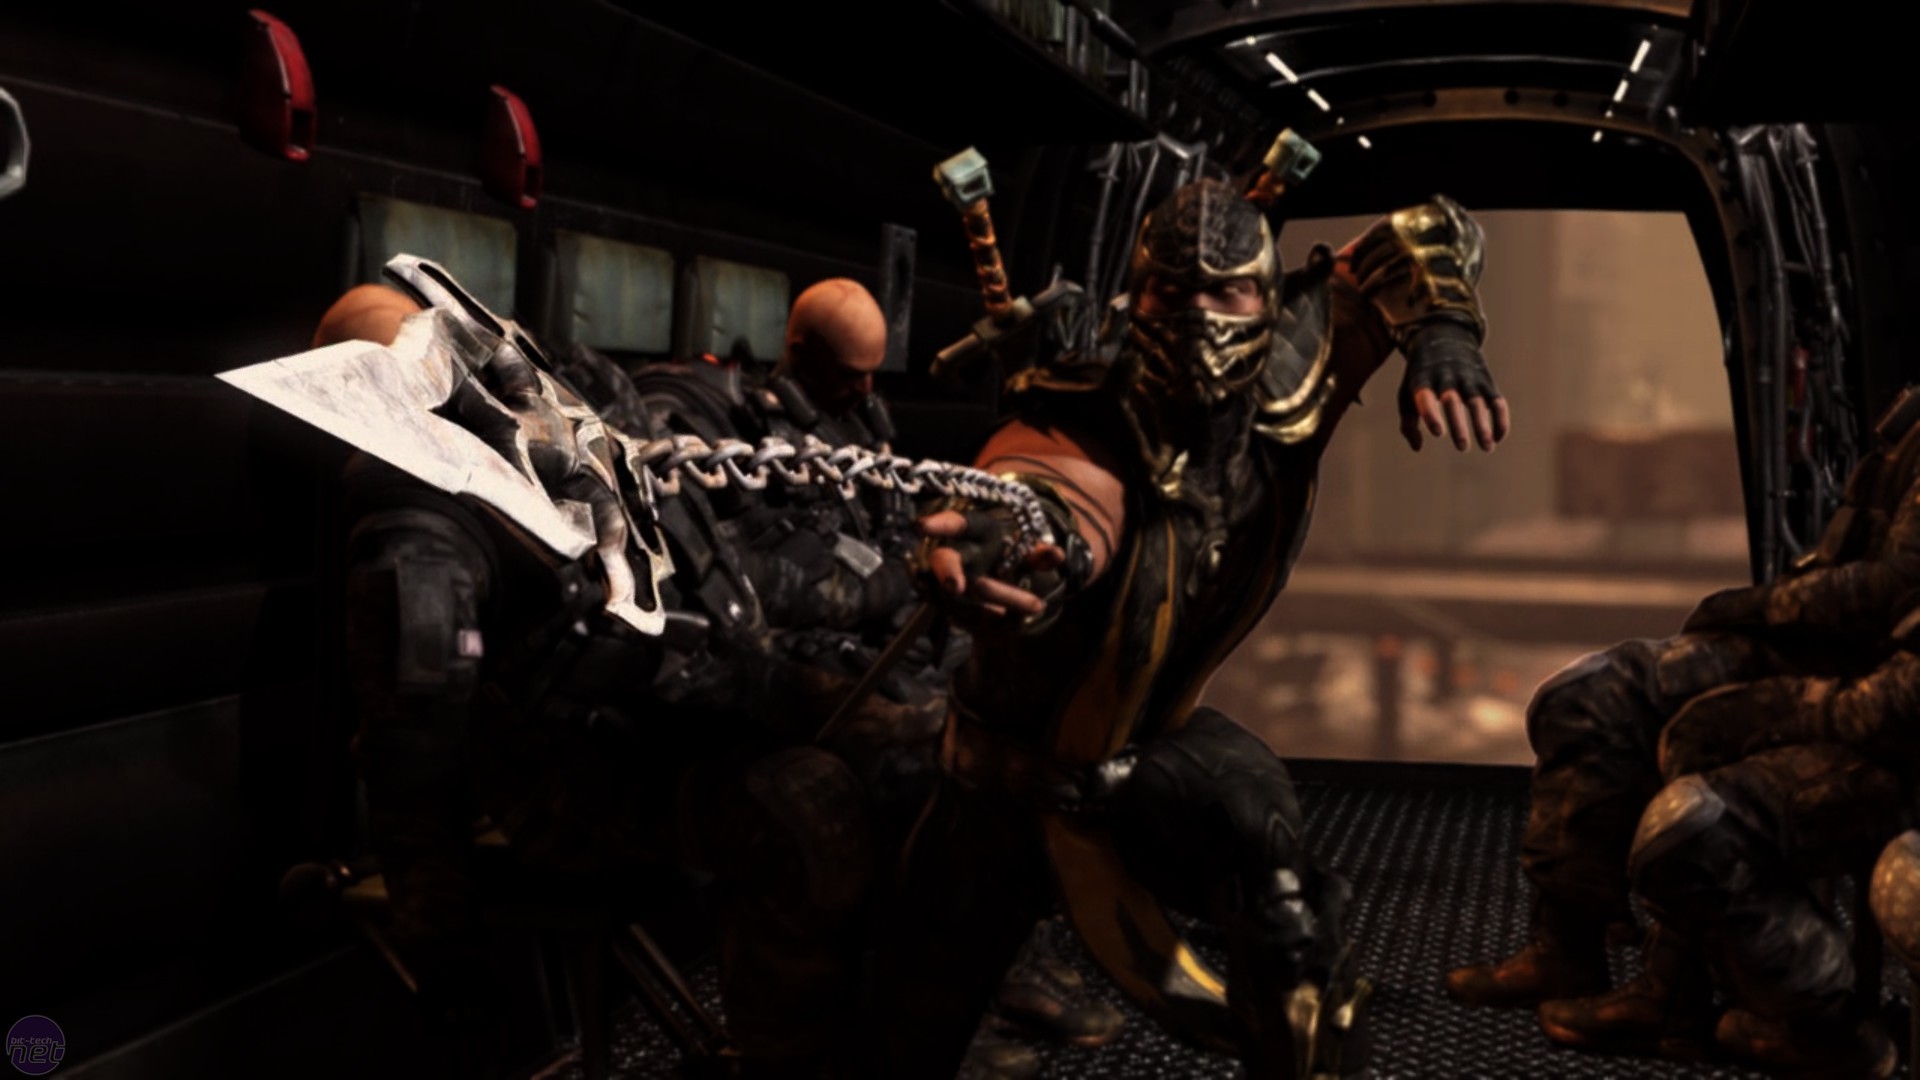 Mortal Kombat X (for PC) Review